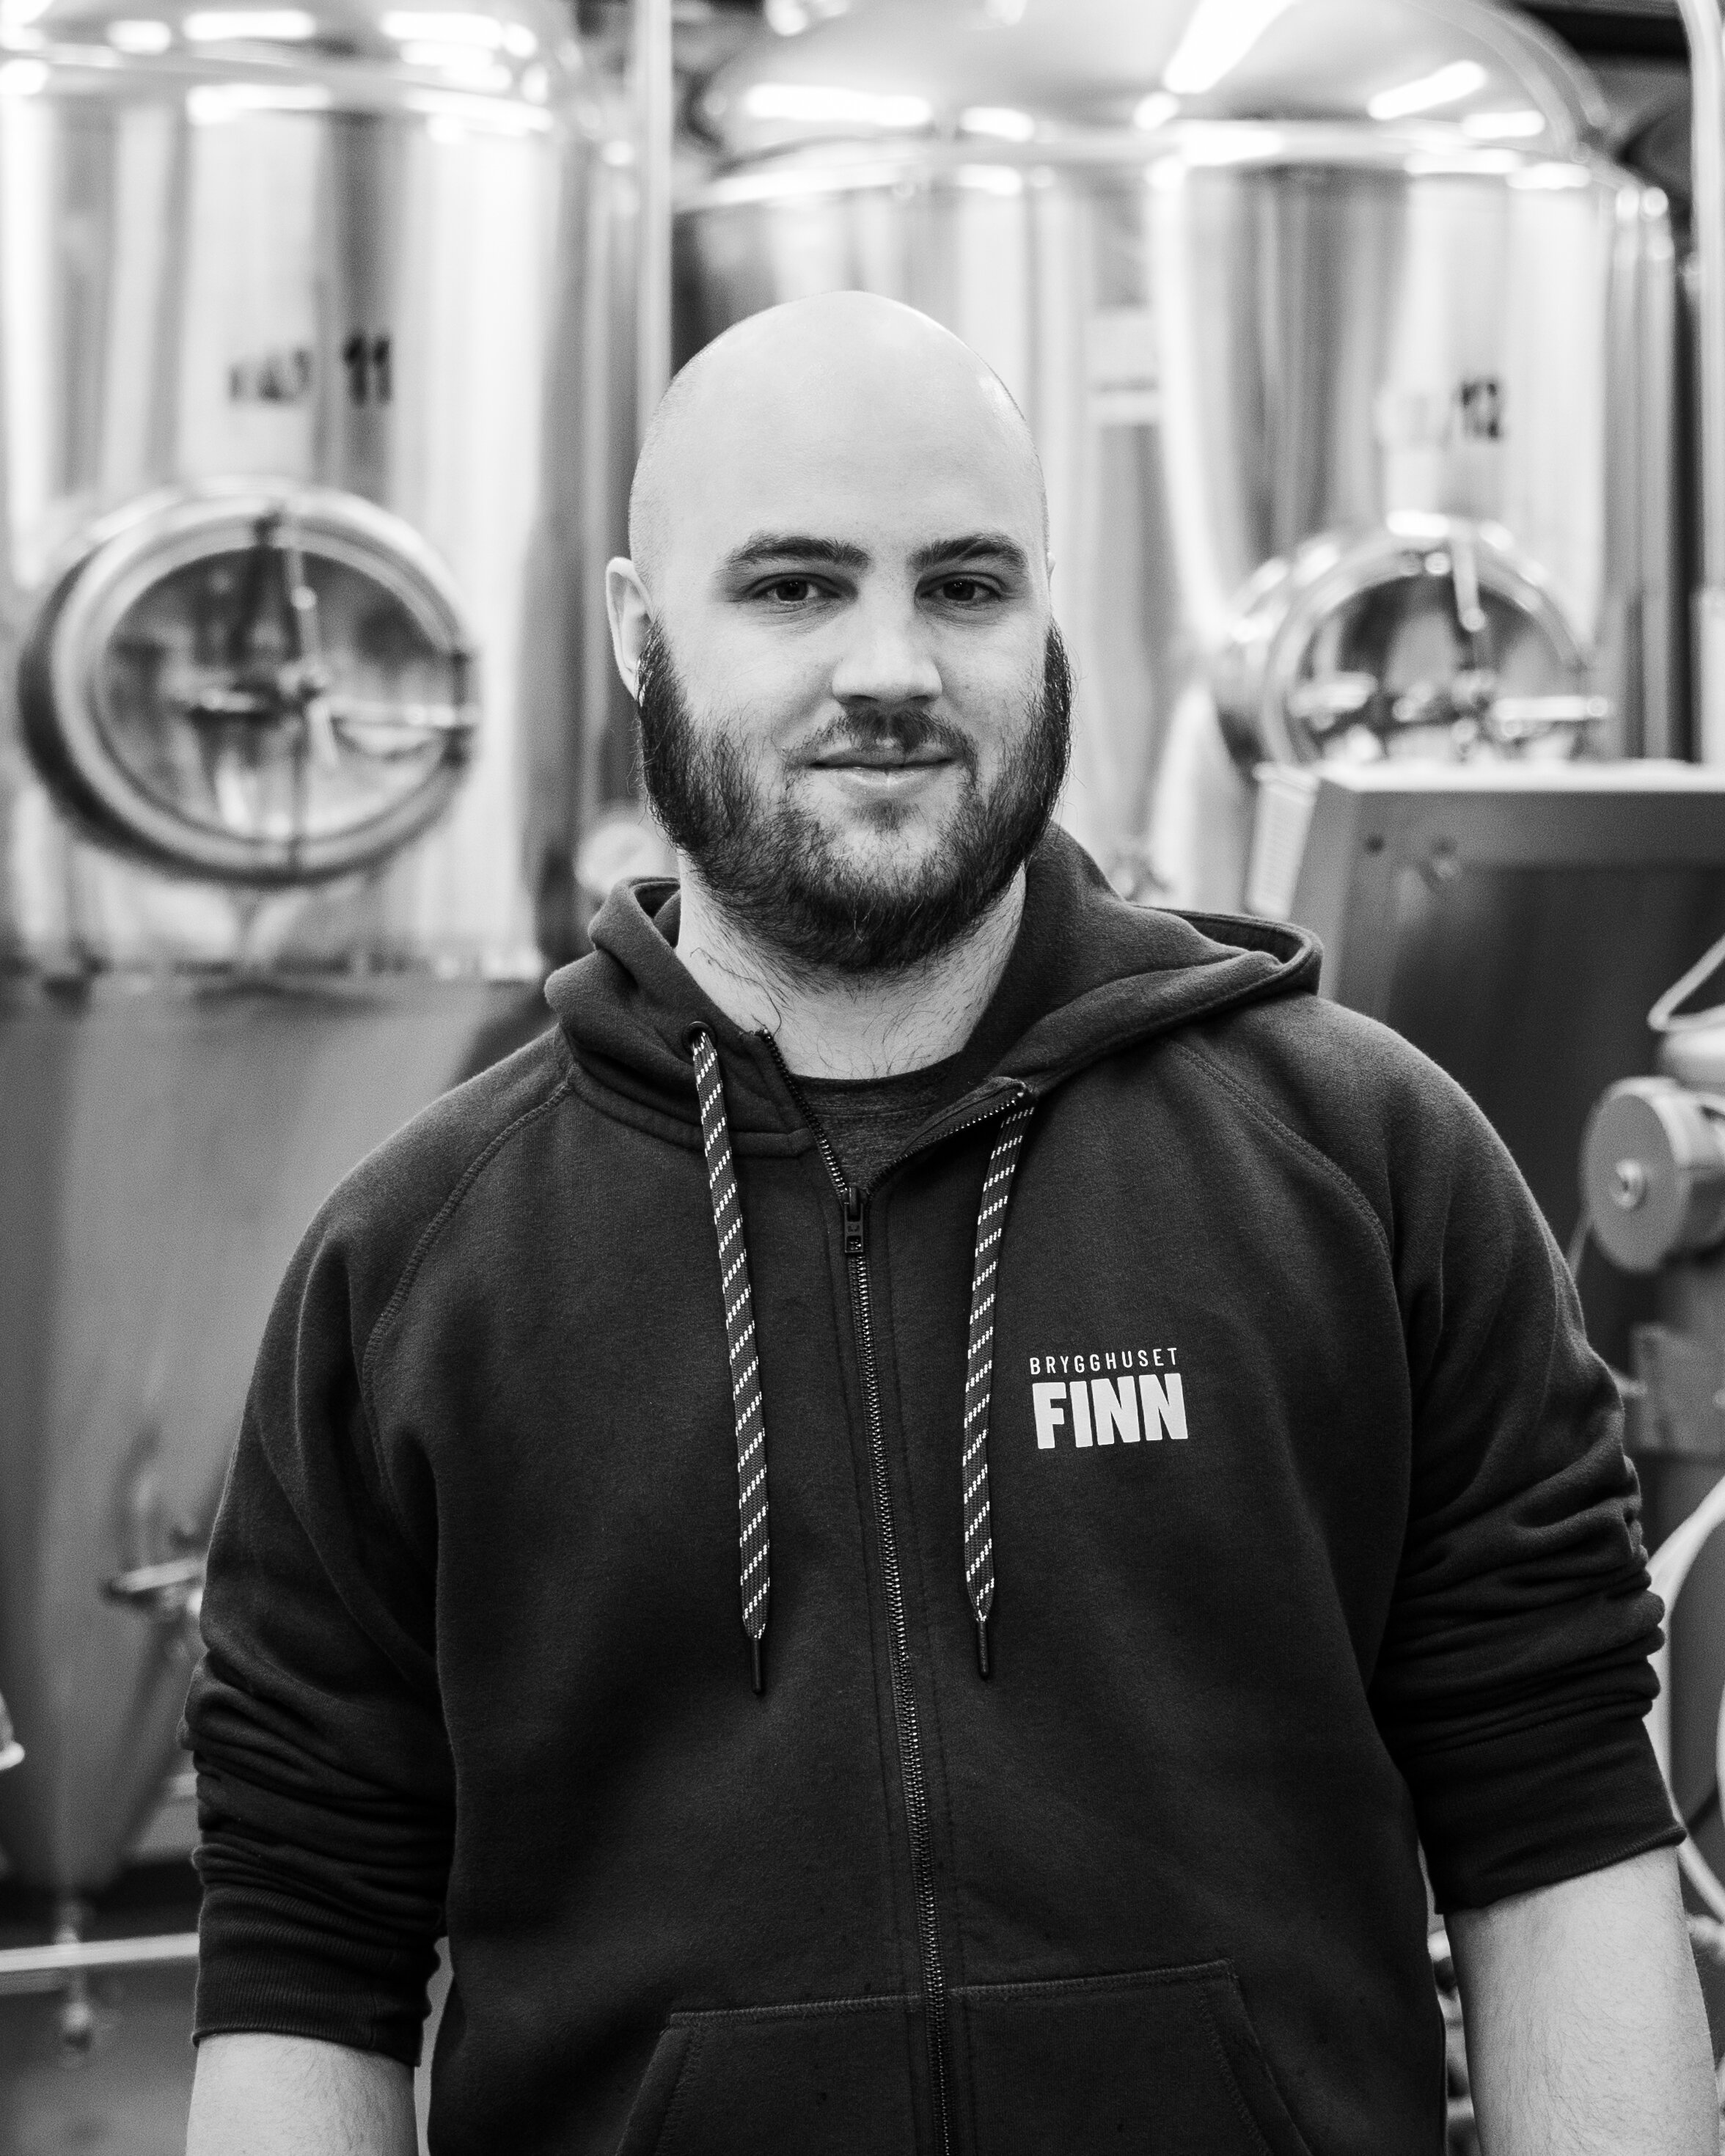 SIMON FRENNBERG Brewing, Technology Manager &medgrundaresimon@brygghusetfinn.se